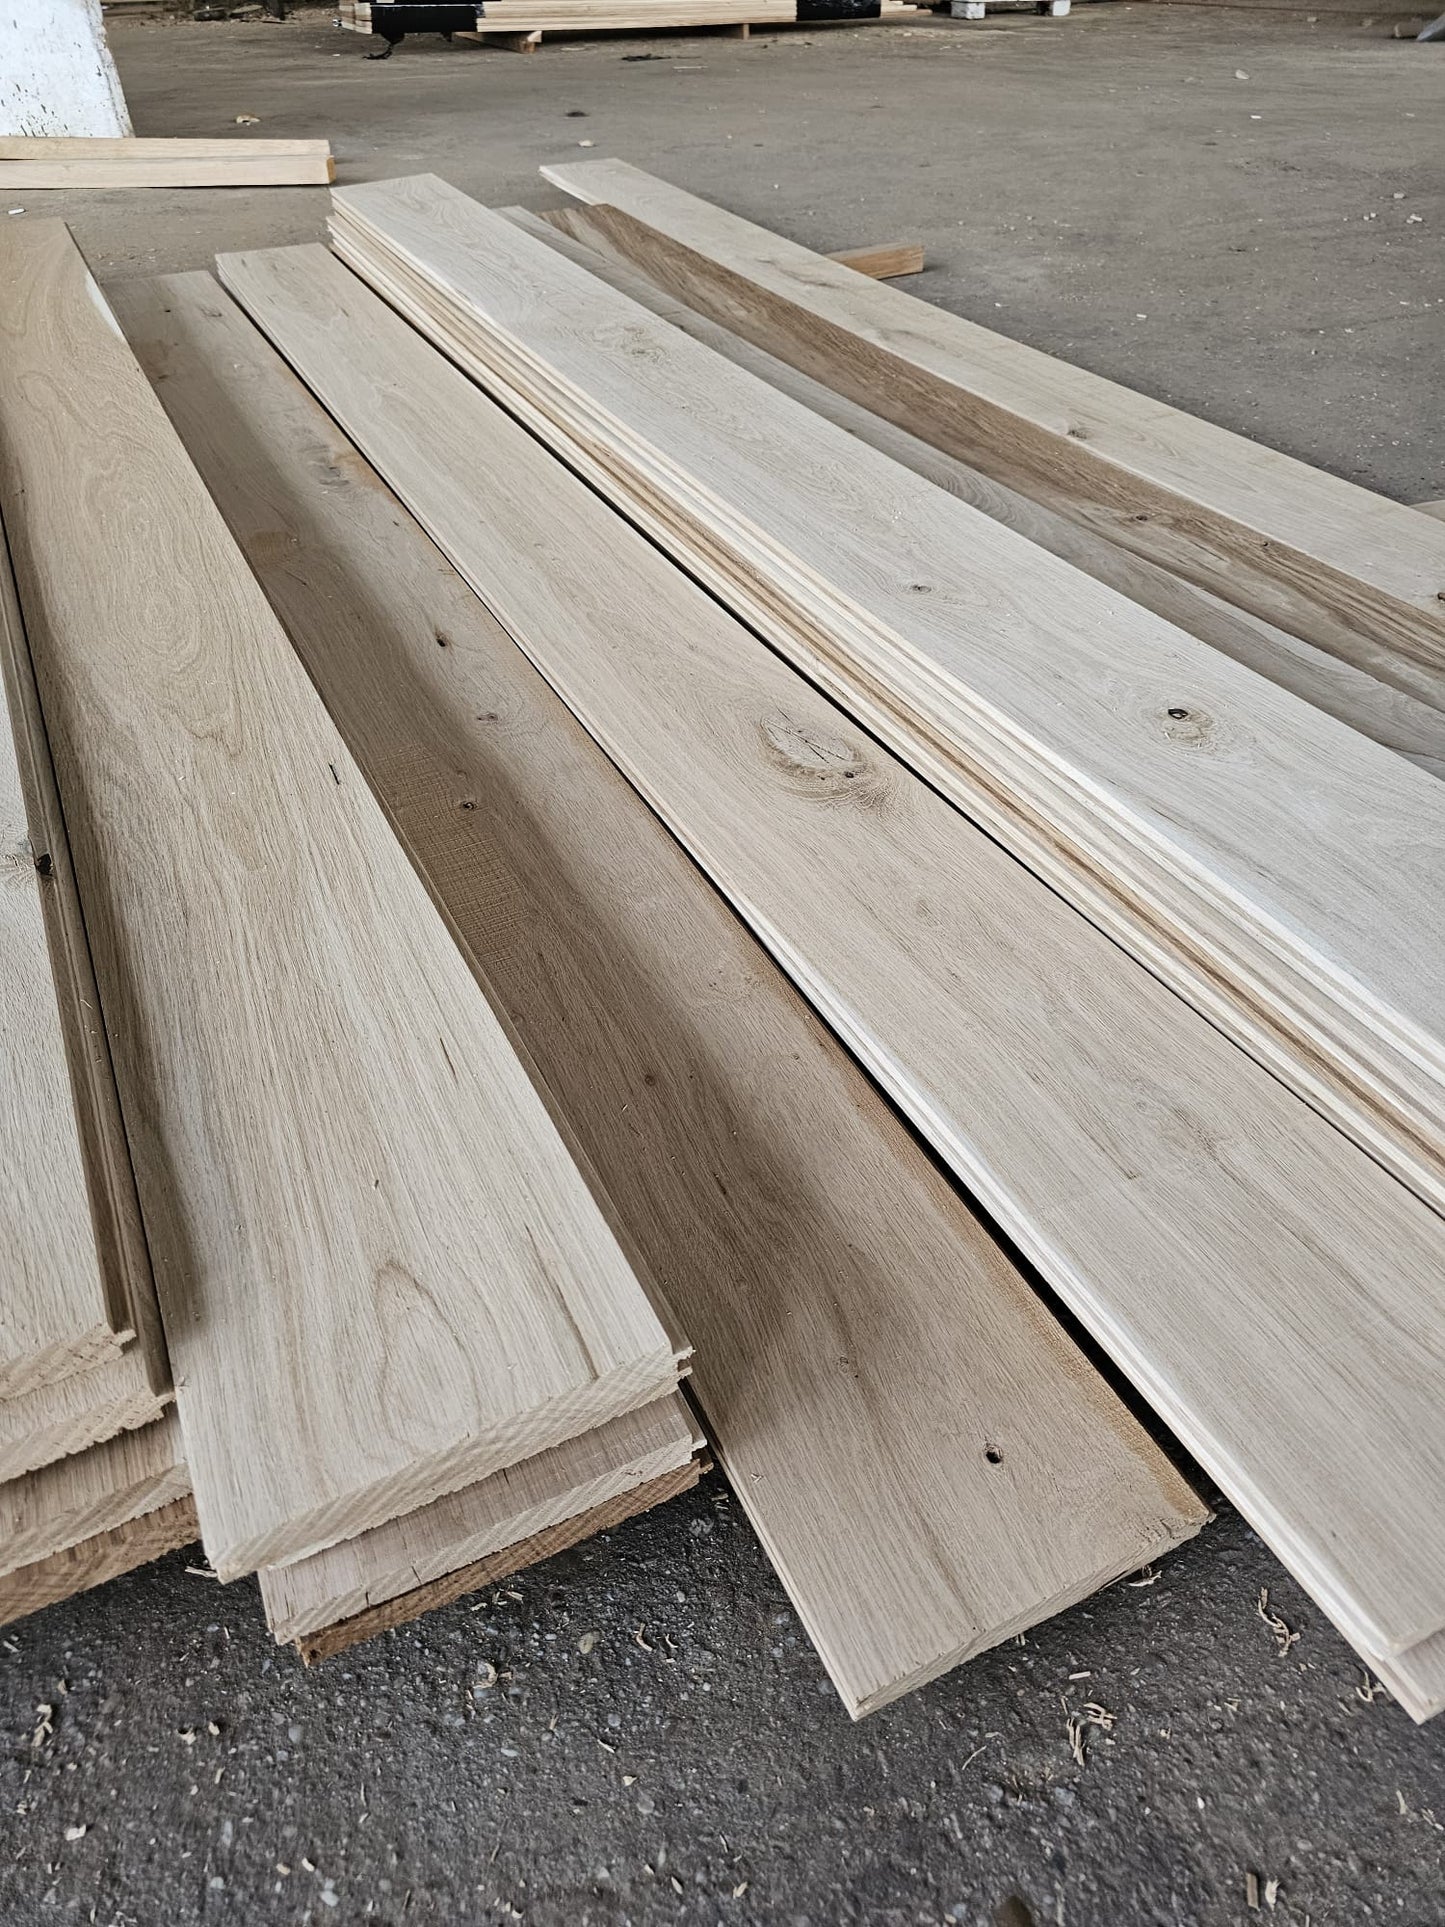 Kiln dried Oak Flooring - Available 10 / 12.5 / 15 / 18 / 20 cm wide